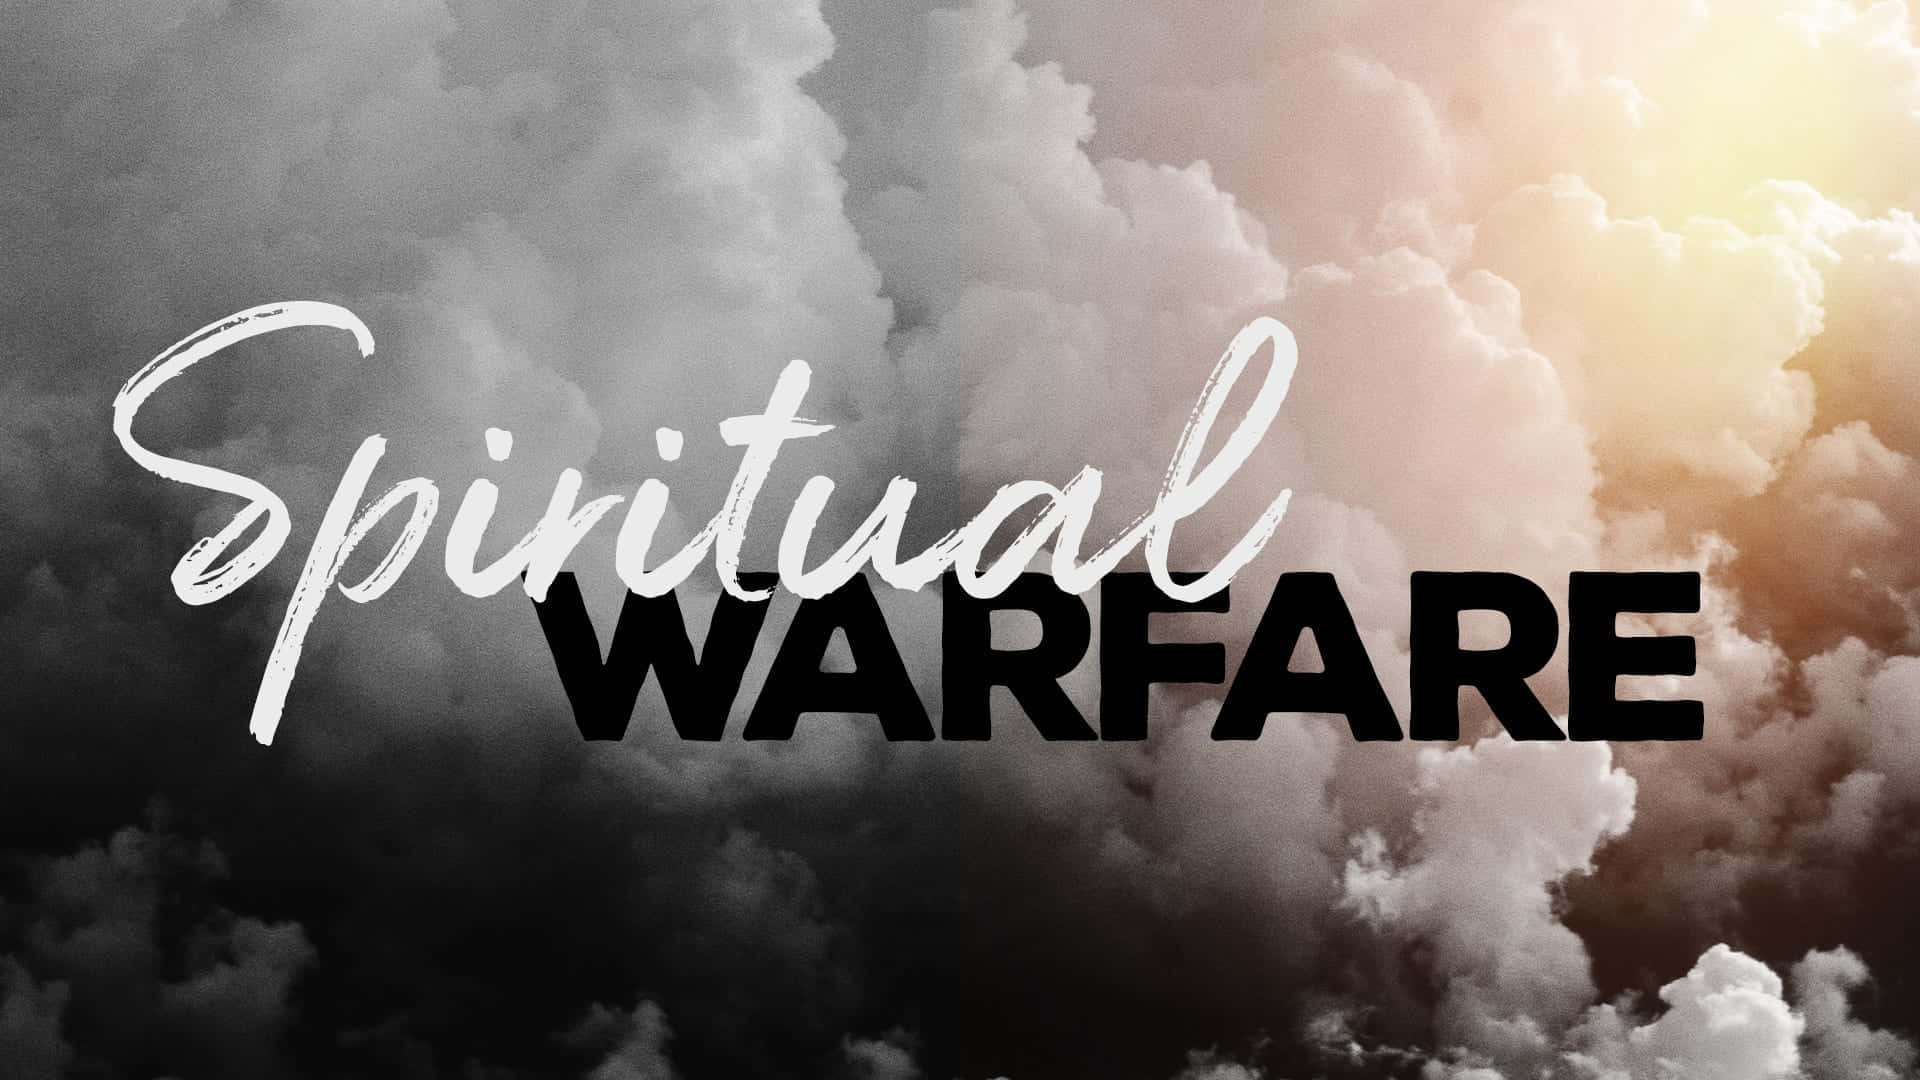 Superandola Guerra Espiritual Con Confianza Y Fe En Dios Fondo de pantalla